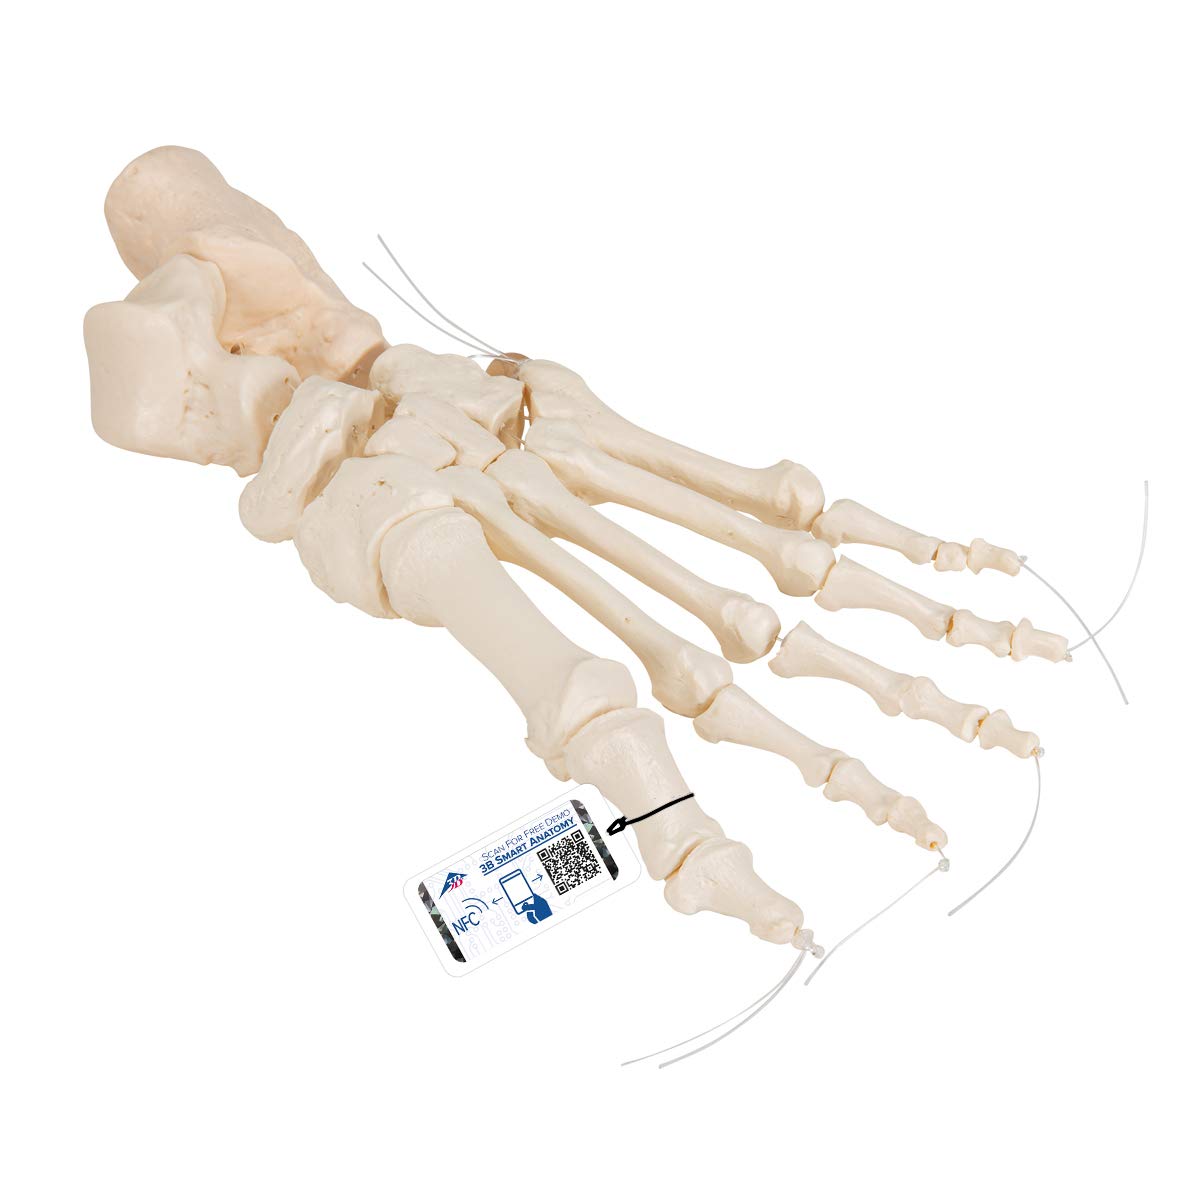 3B Scientific Menschliche Anatomie - Fußskelett lose auf Nylon gezogen + kostenlose Anatomie App - 3B Smart Anatomy